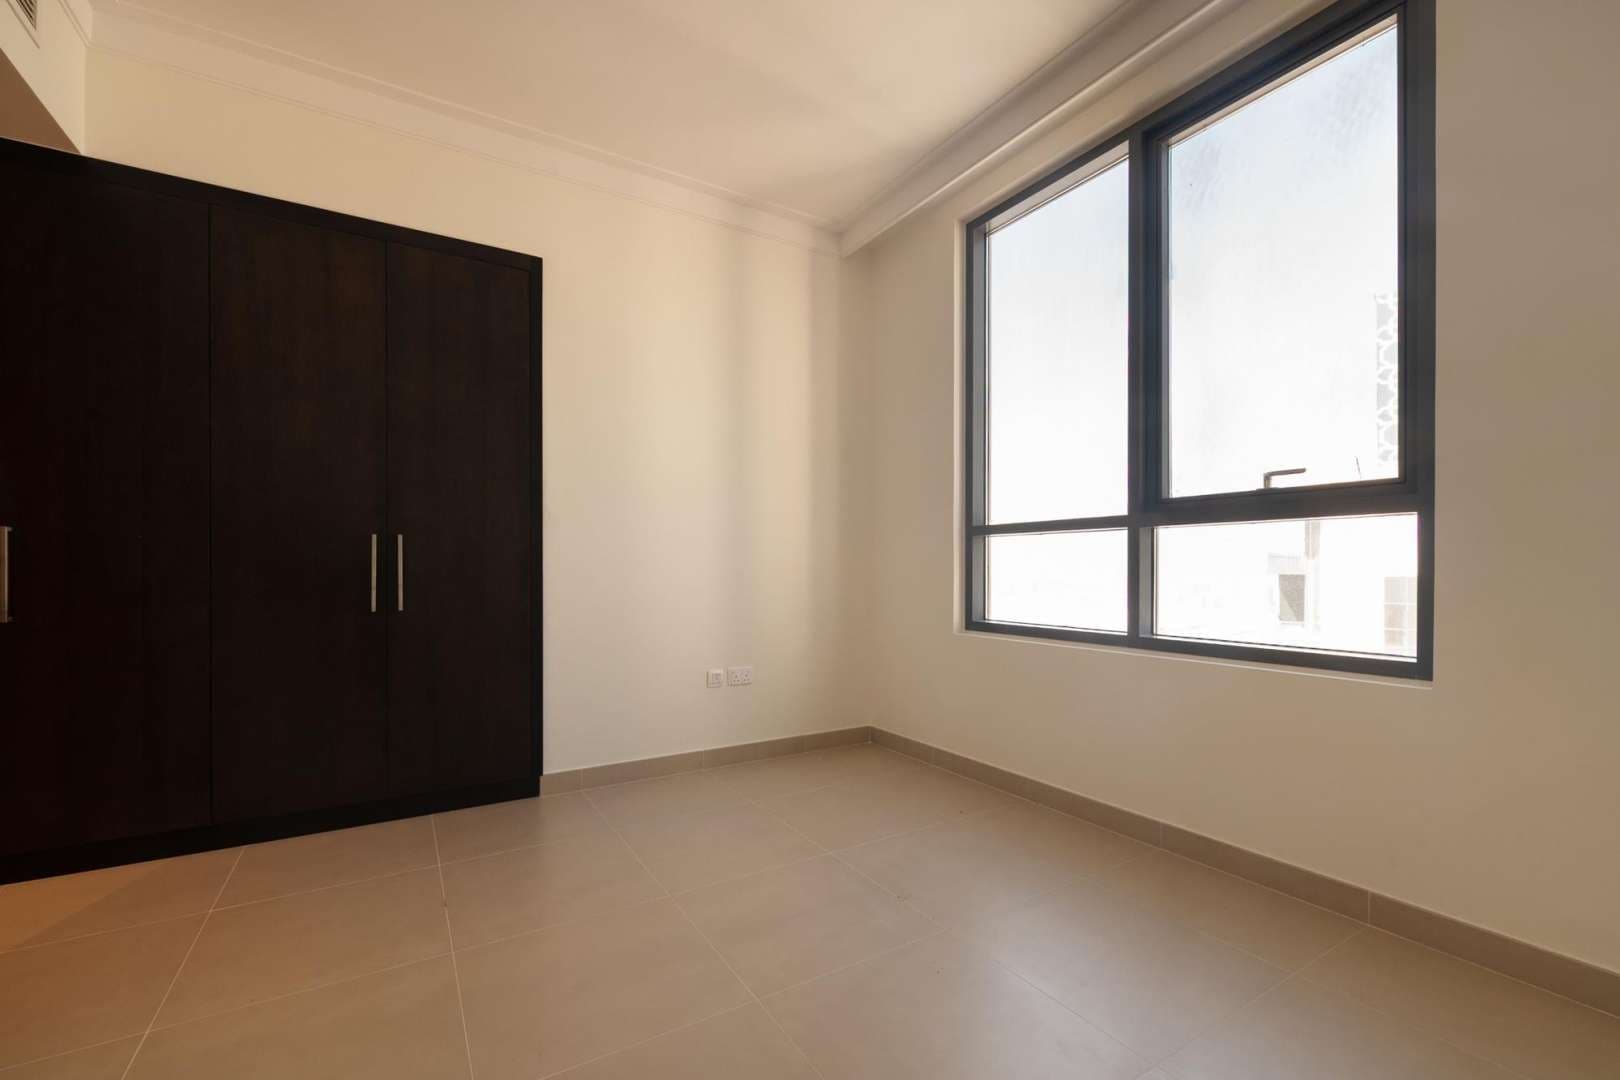 2 Bedroom Apartment For Rent Dubai Creek Residences Lp06293 7b43be6abcc0e00.jpg